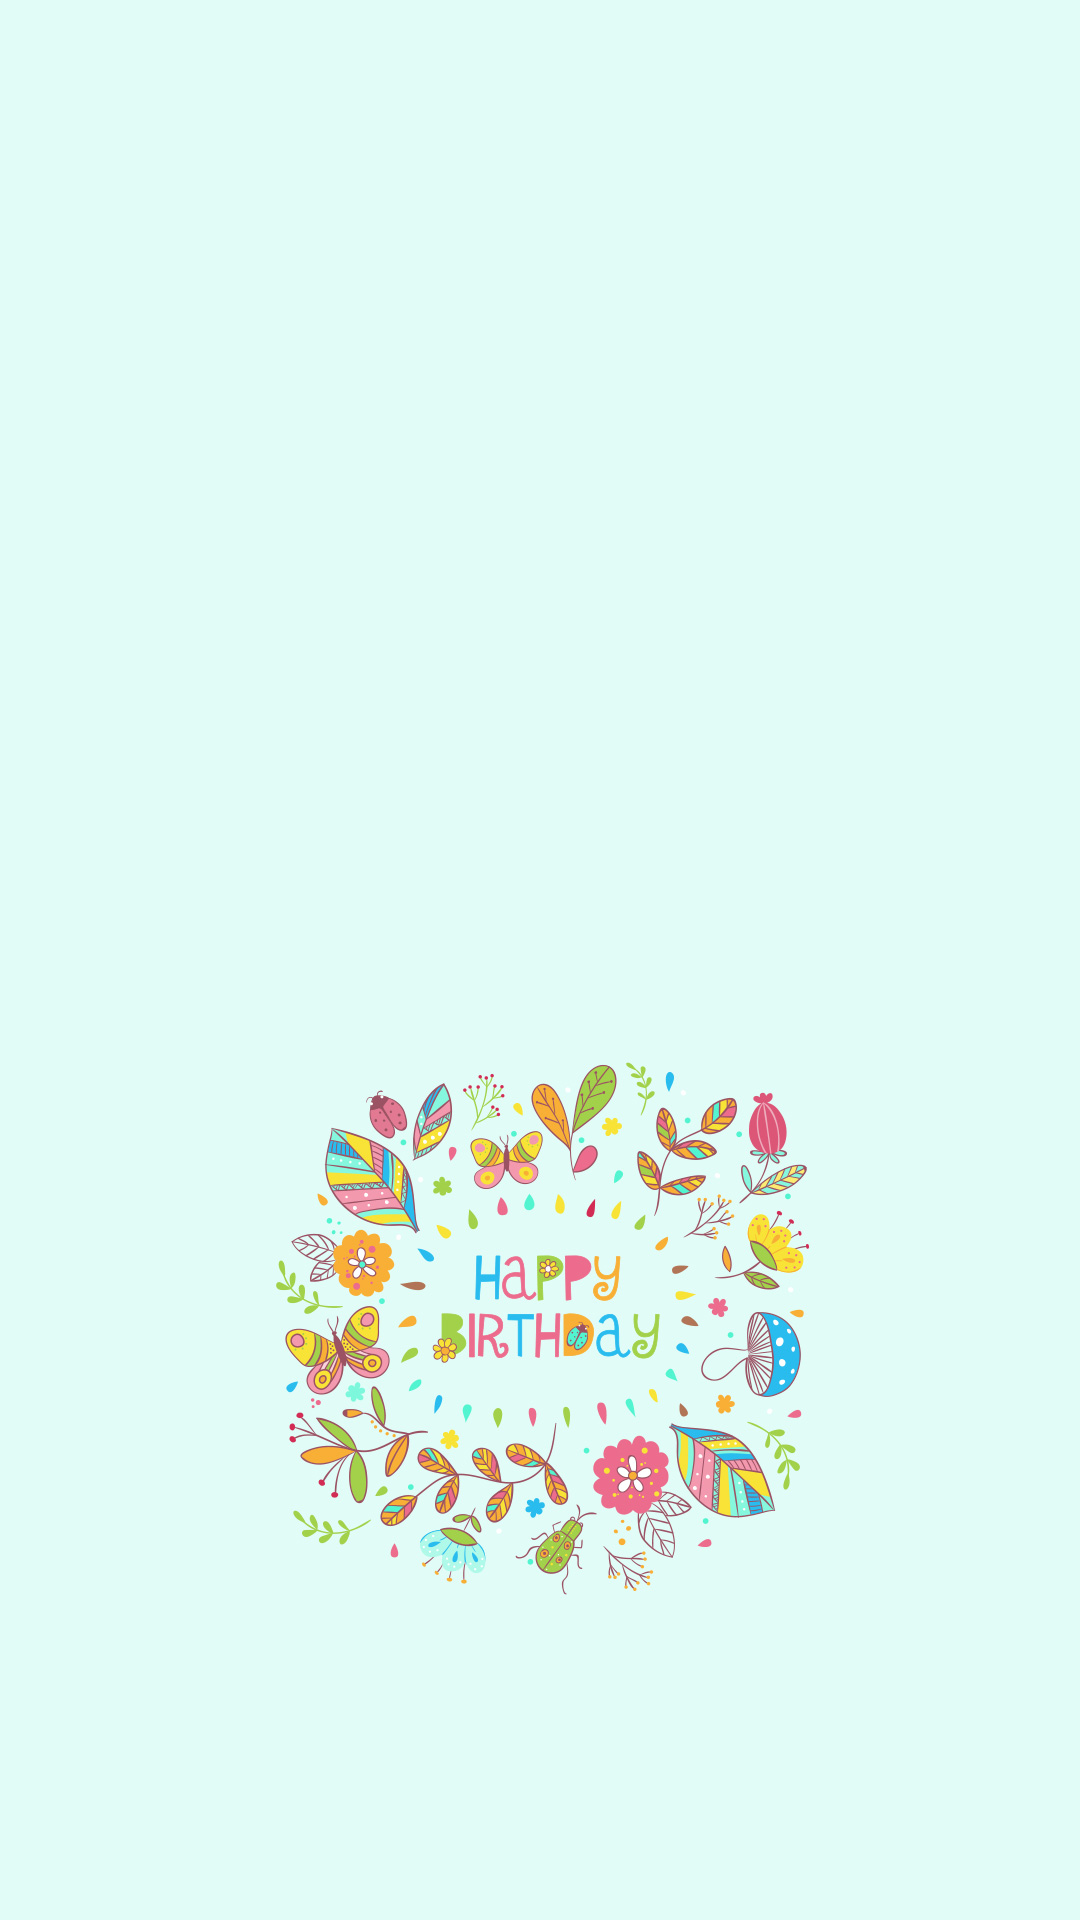 生日快乐小插画欧美小清新文字line换不完的手机壁纸,个性唯美手机壁纸